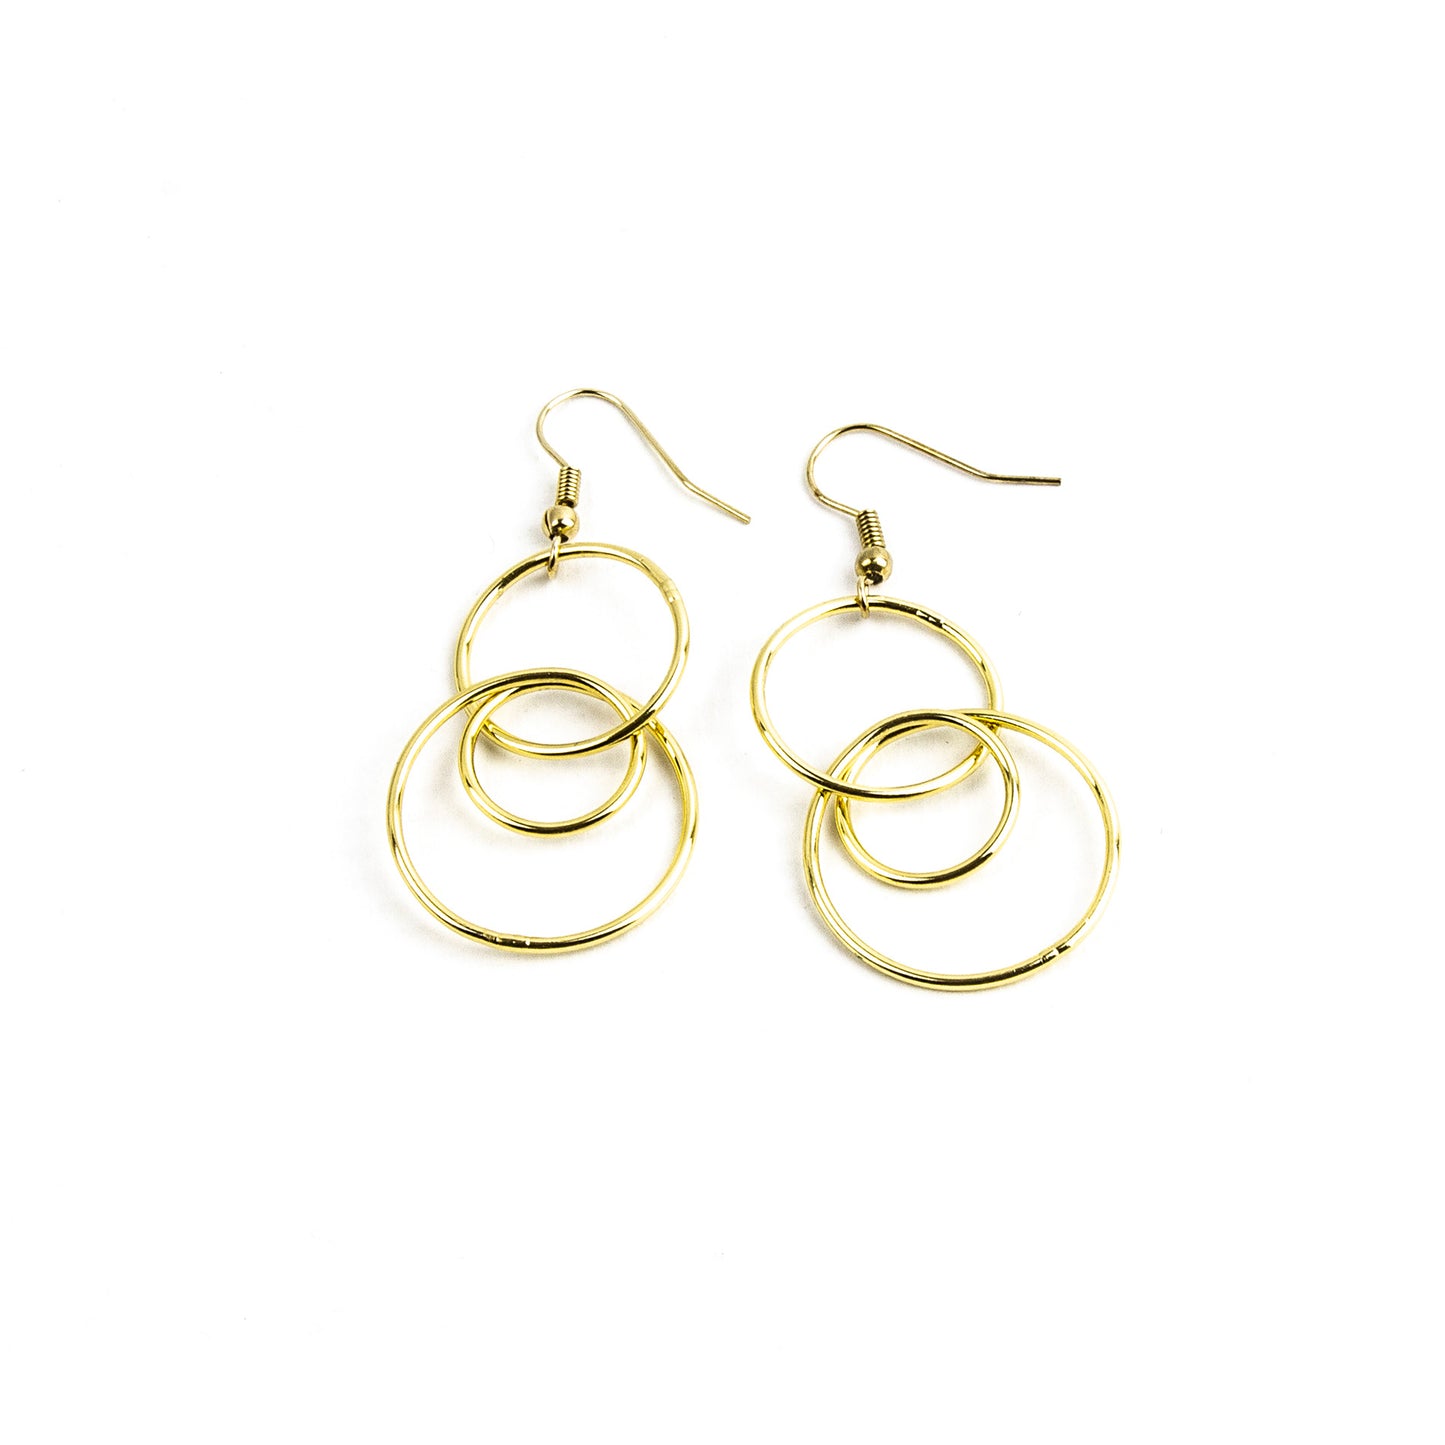 Costanza earrings